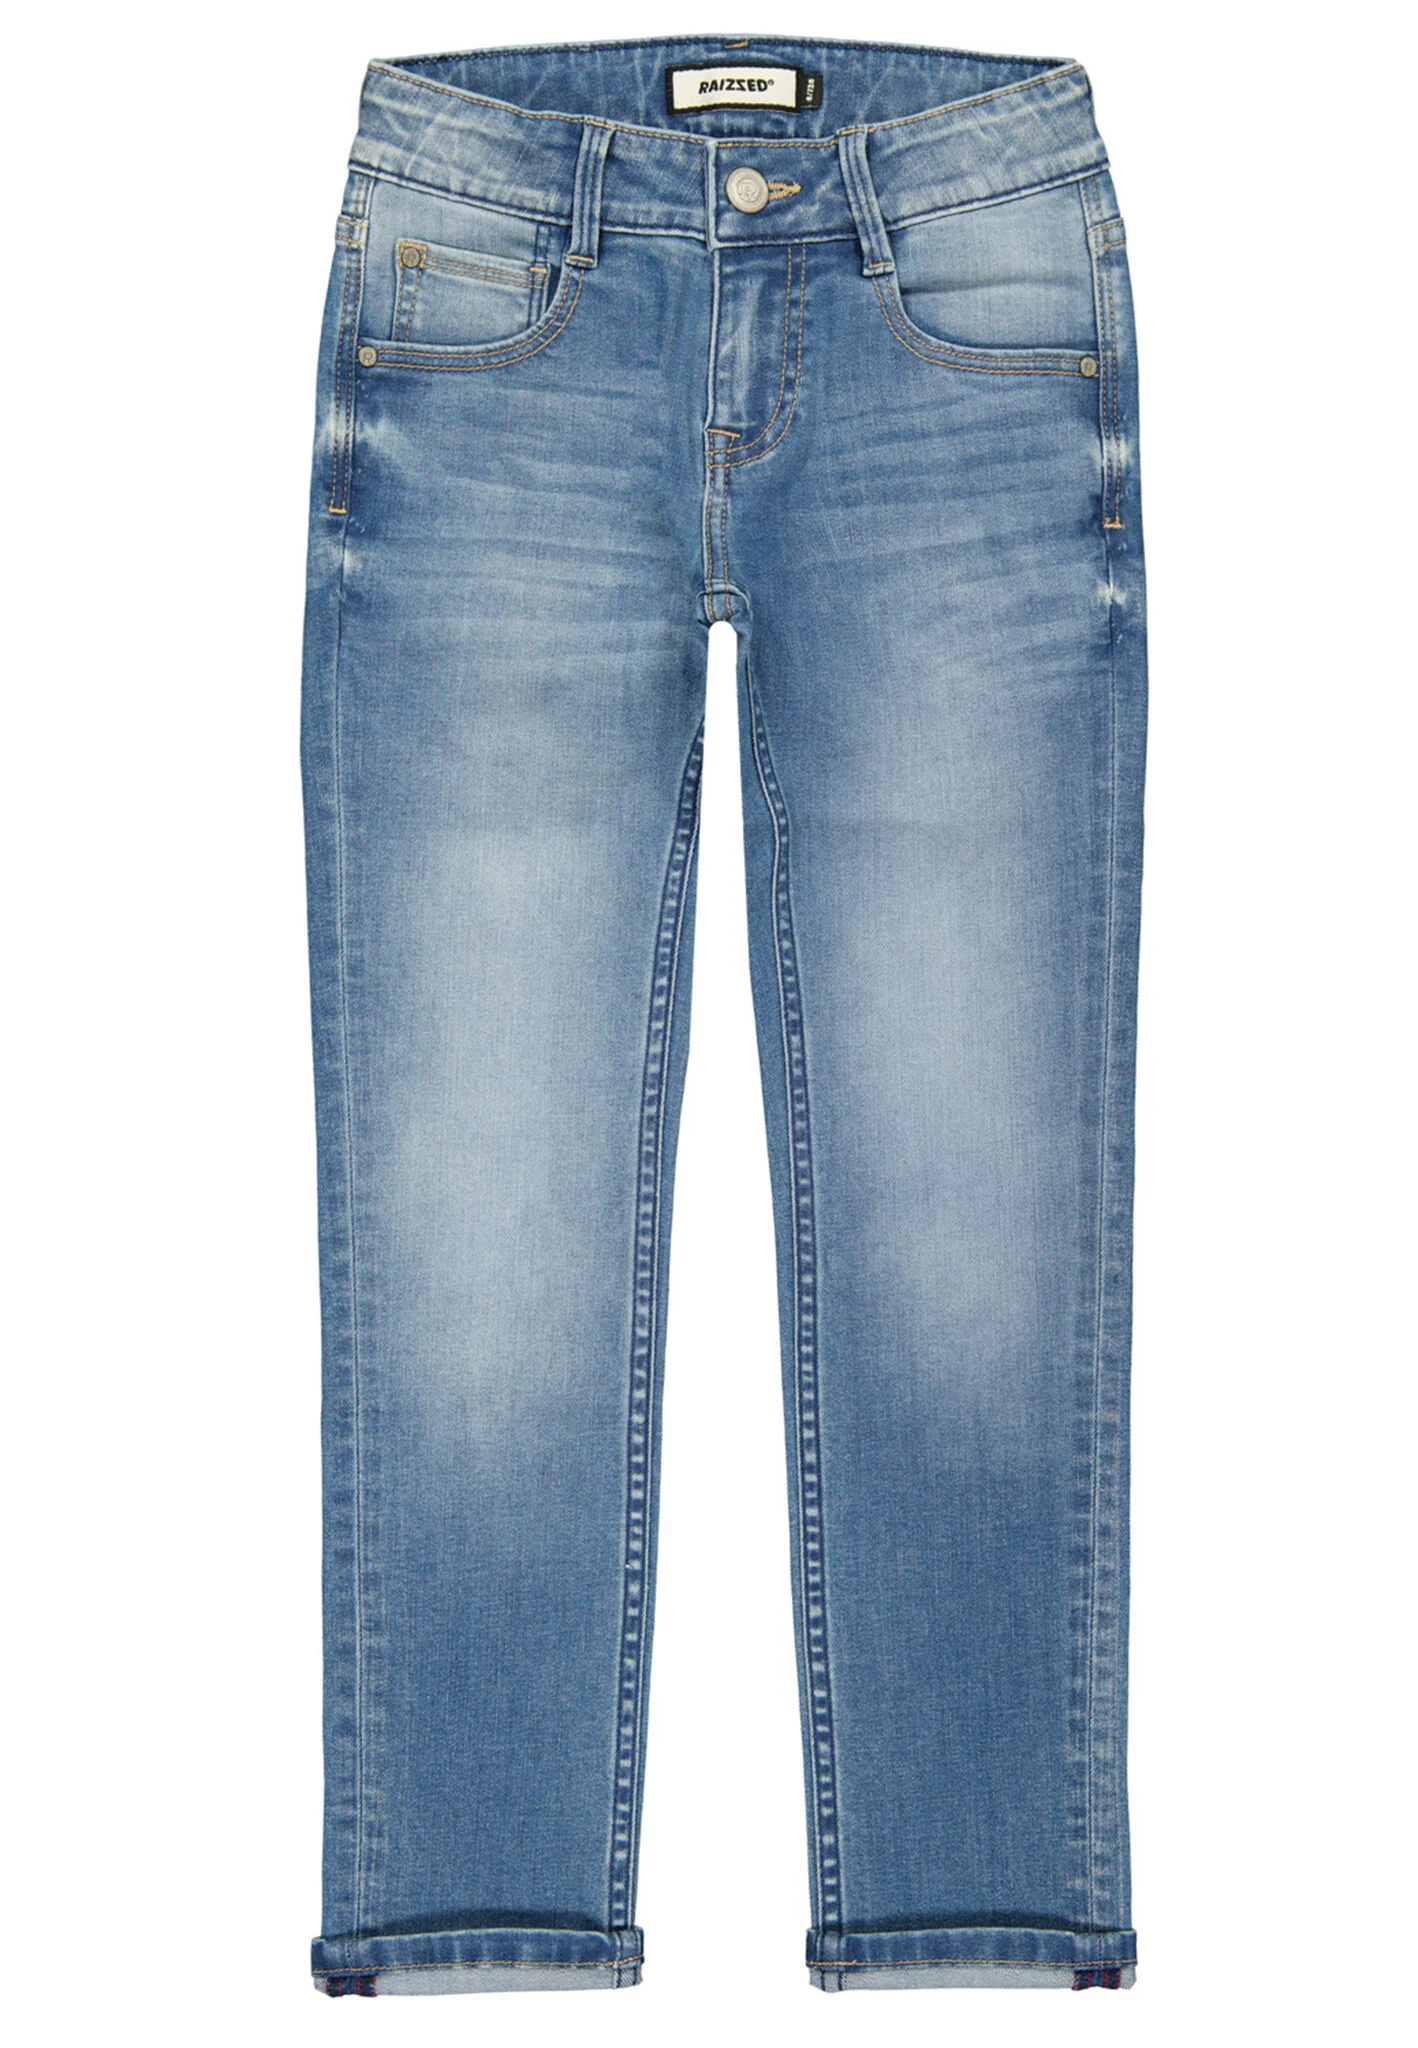 Afbeelding van Raizzed Jongens jeans santiago slim fit mid blue